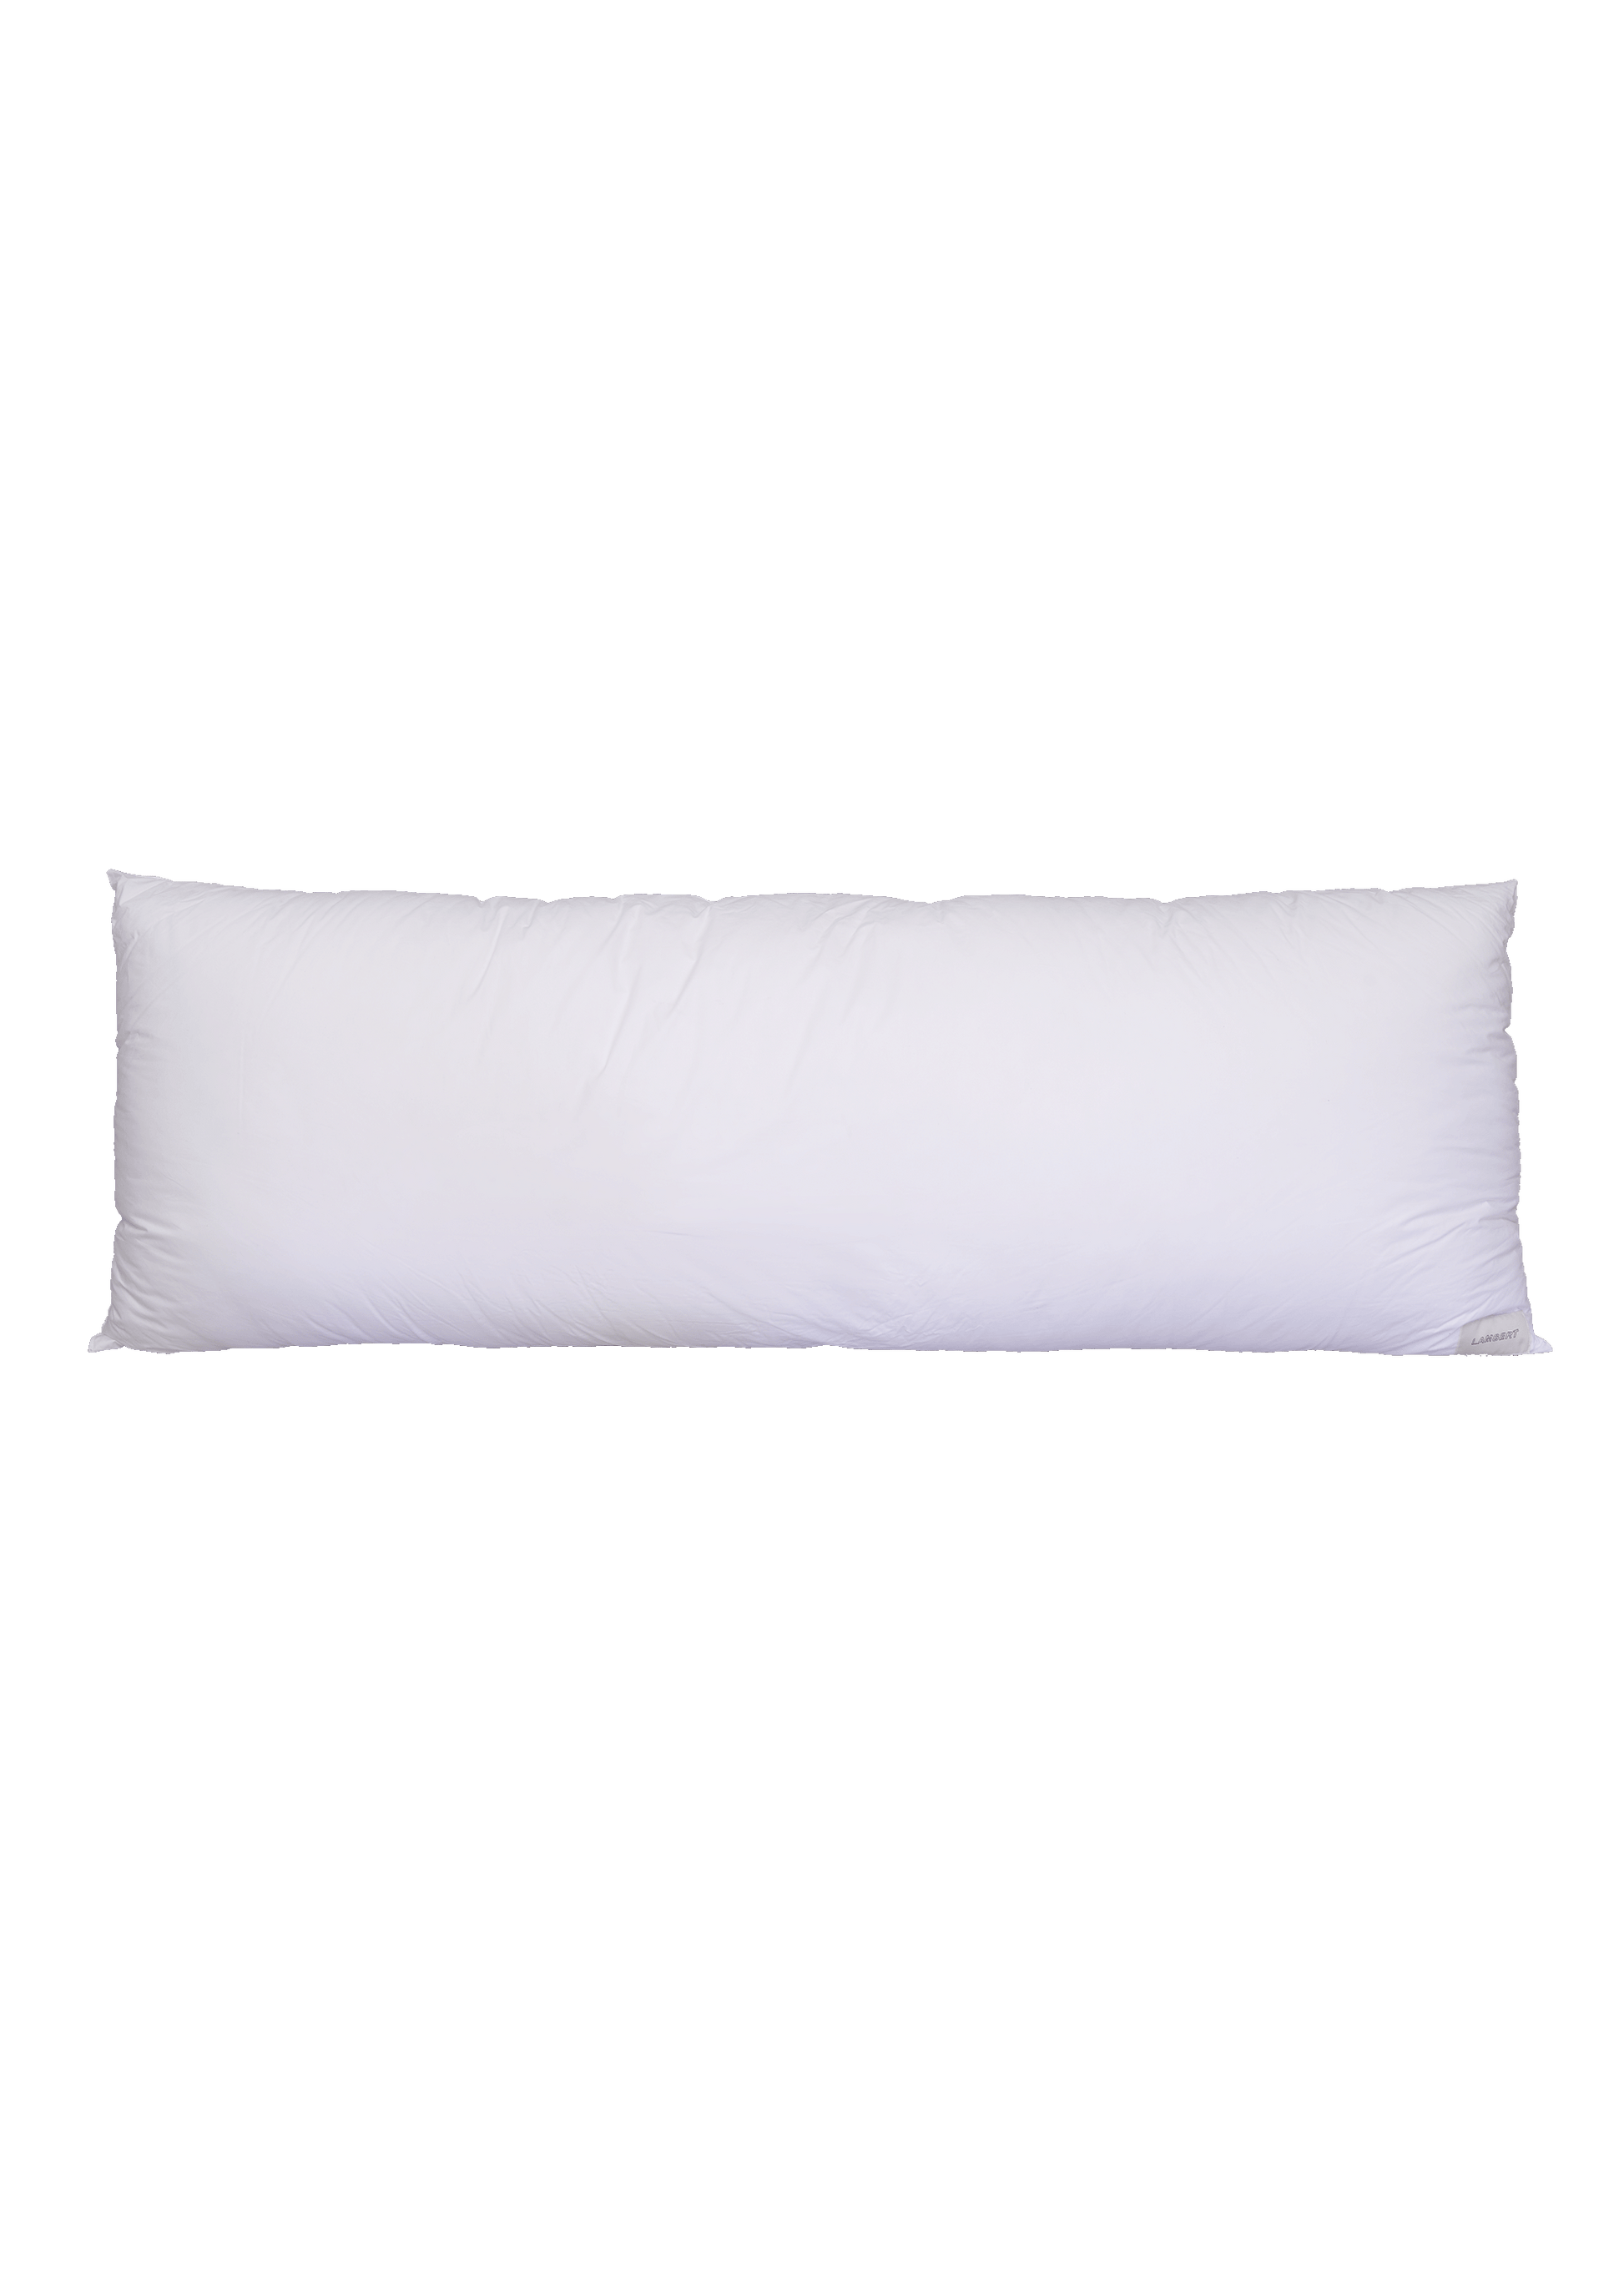 Body Pillow by Tyler Lambert Pillows